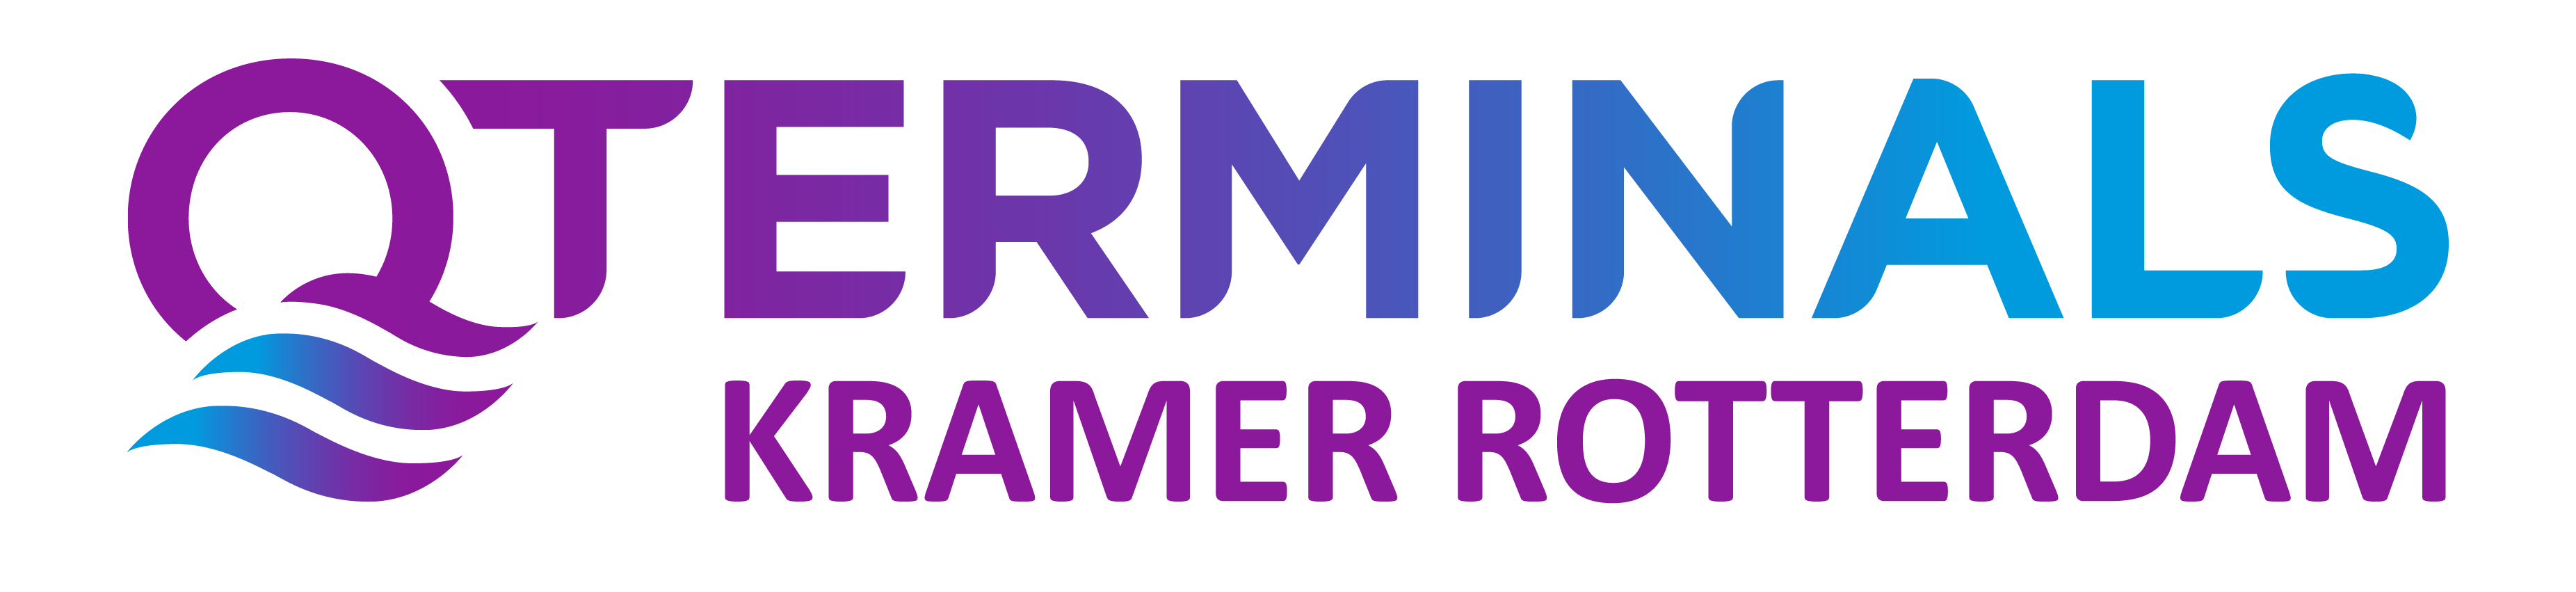 Kramer Group logo